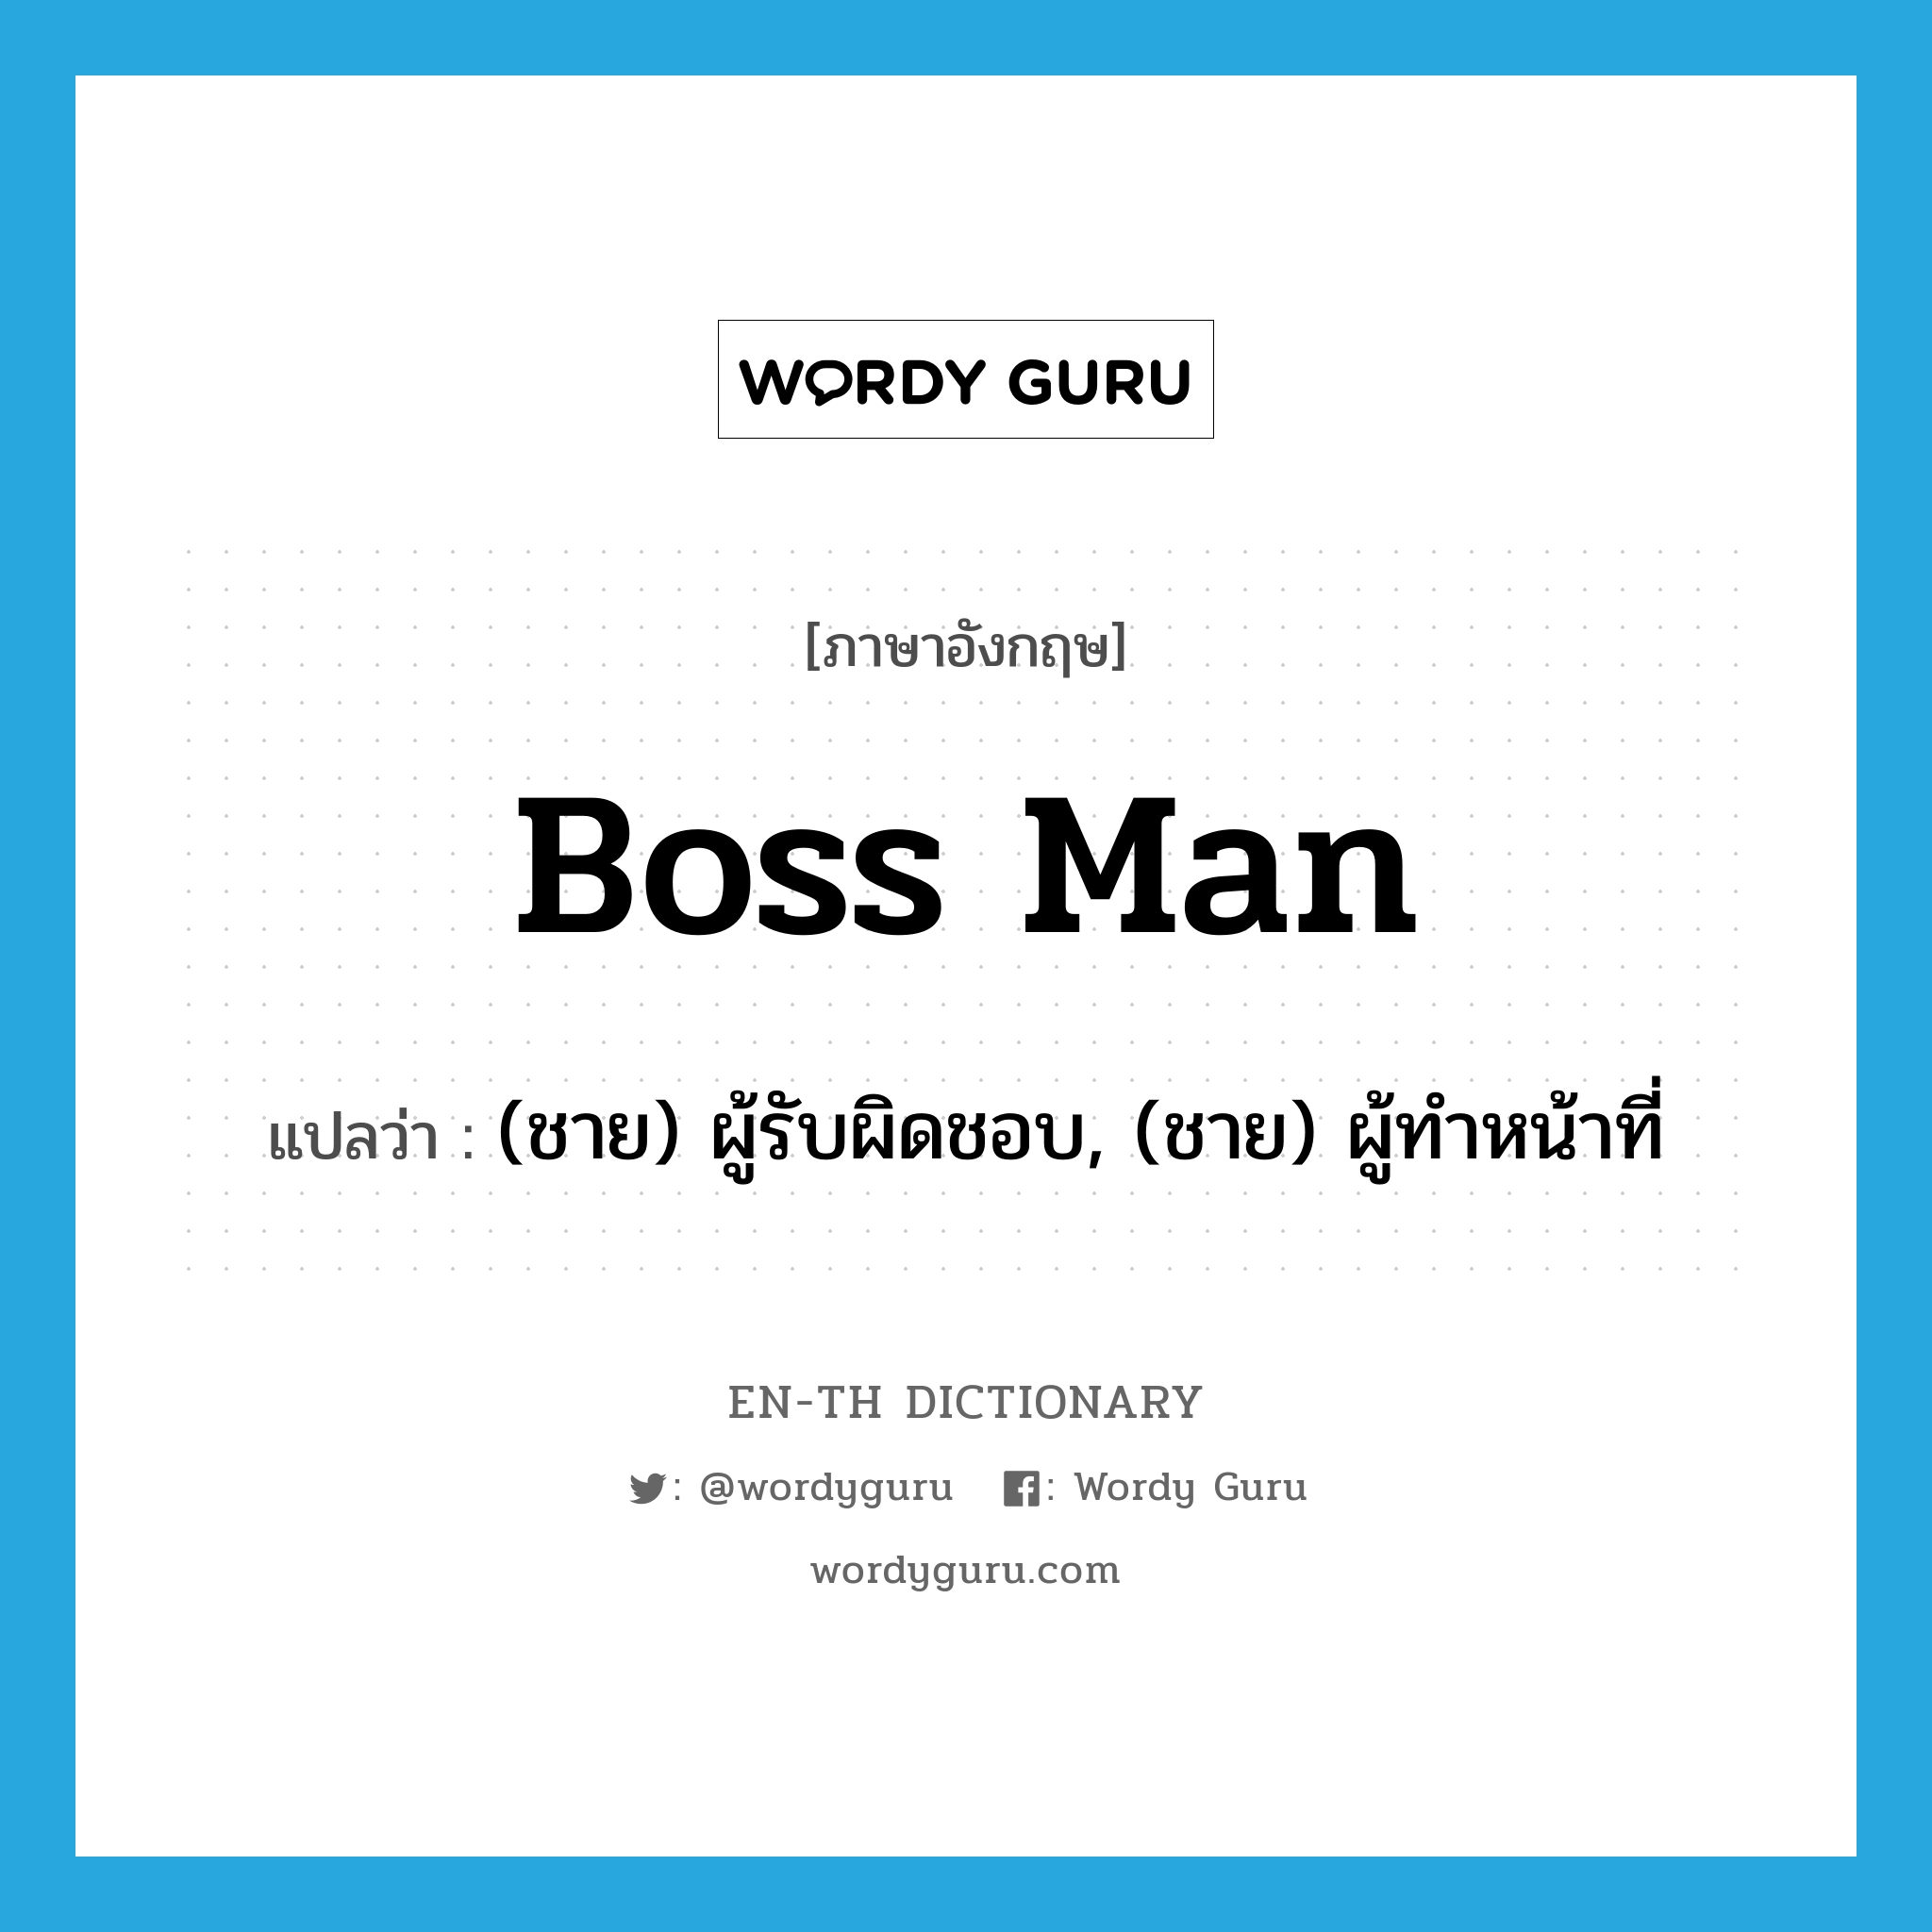 (ชาย) ผู้รับผิดชอบ, (ชาย) ผู้ทำหน้าที่ ภาษาอังกฤษ?, คำศัพท์ภาษาอังกฤษ (ชาย) ผู้รับผิดชอบ, (ชาย) ผู้ทำหน้าที่ แปลว่า boss man ประเภท SL หมวด SL